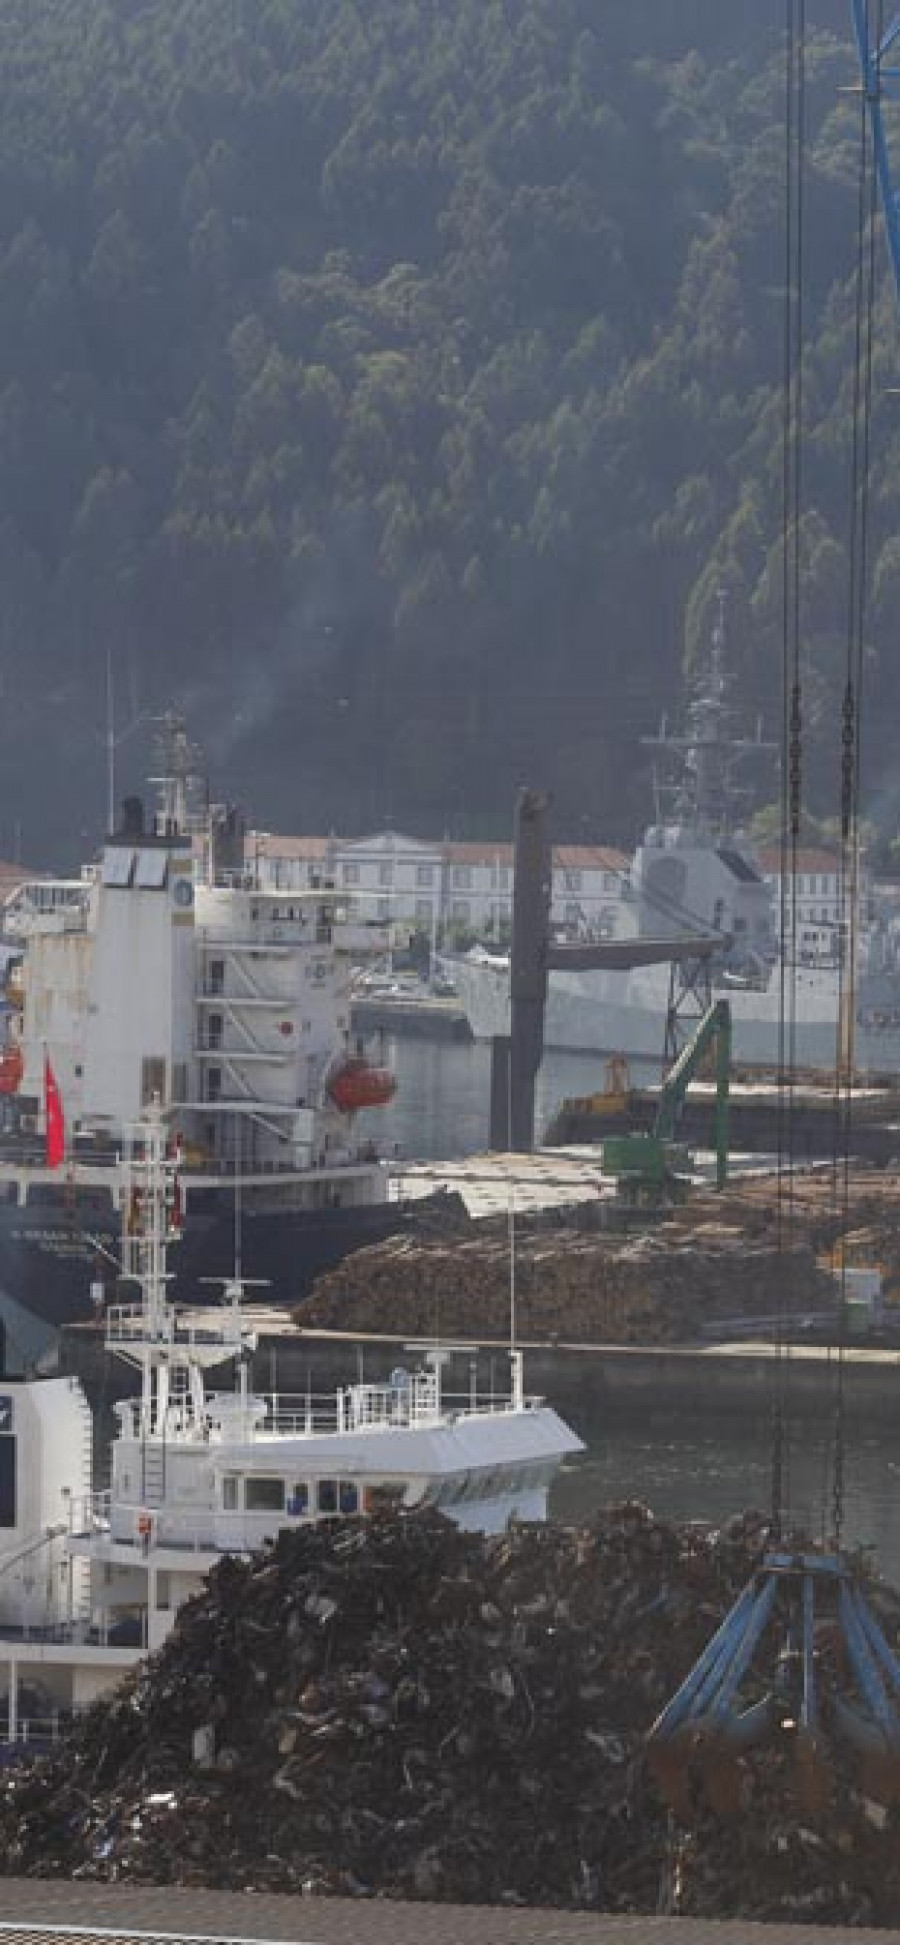 Solo los puertos de Huelva y Cartagena han crecido más que el de Ferrol en el último lustro